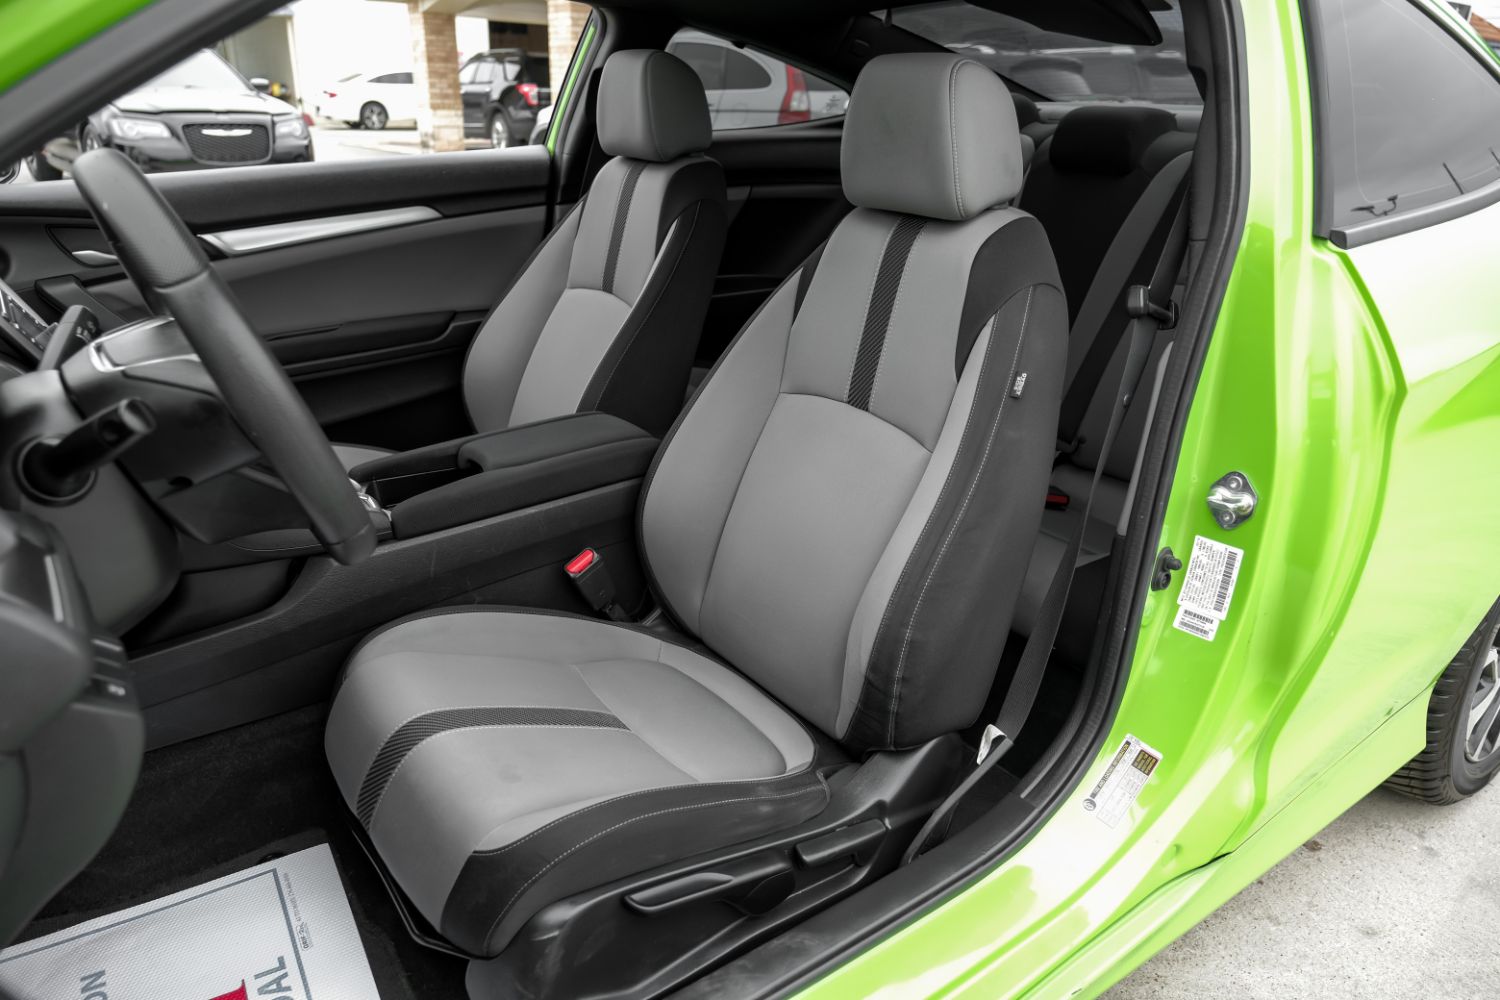 2016 Honda Civic LX-P Coupe CVT 4